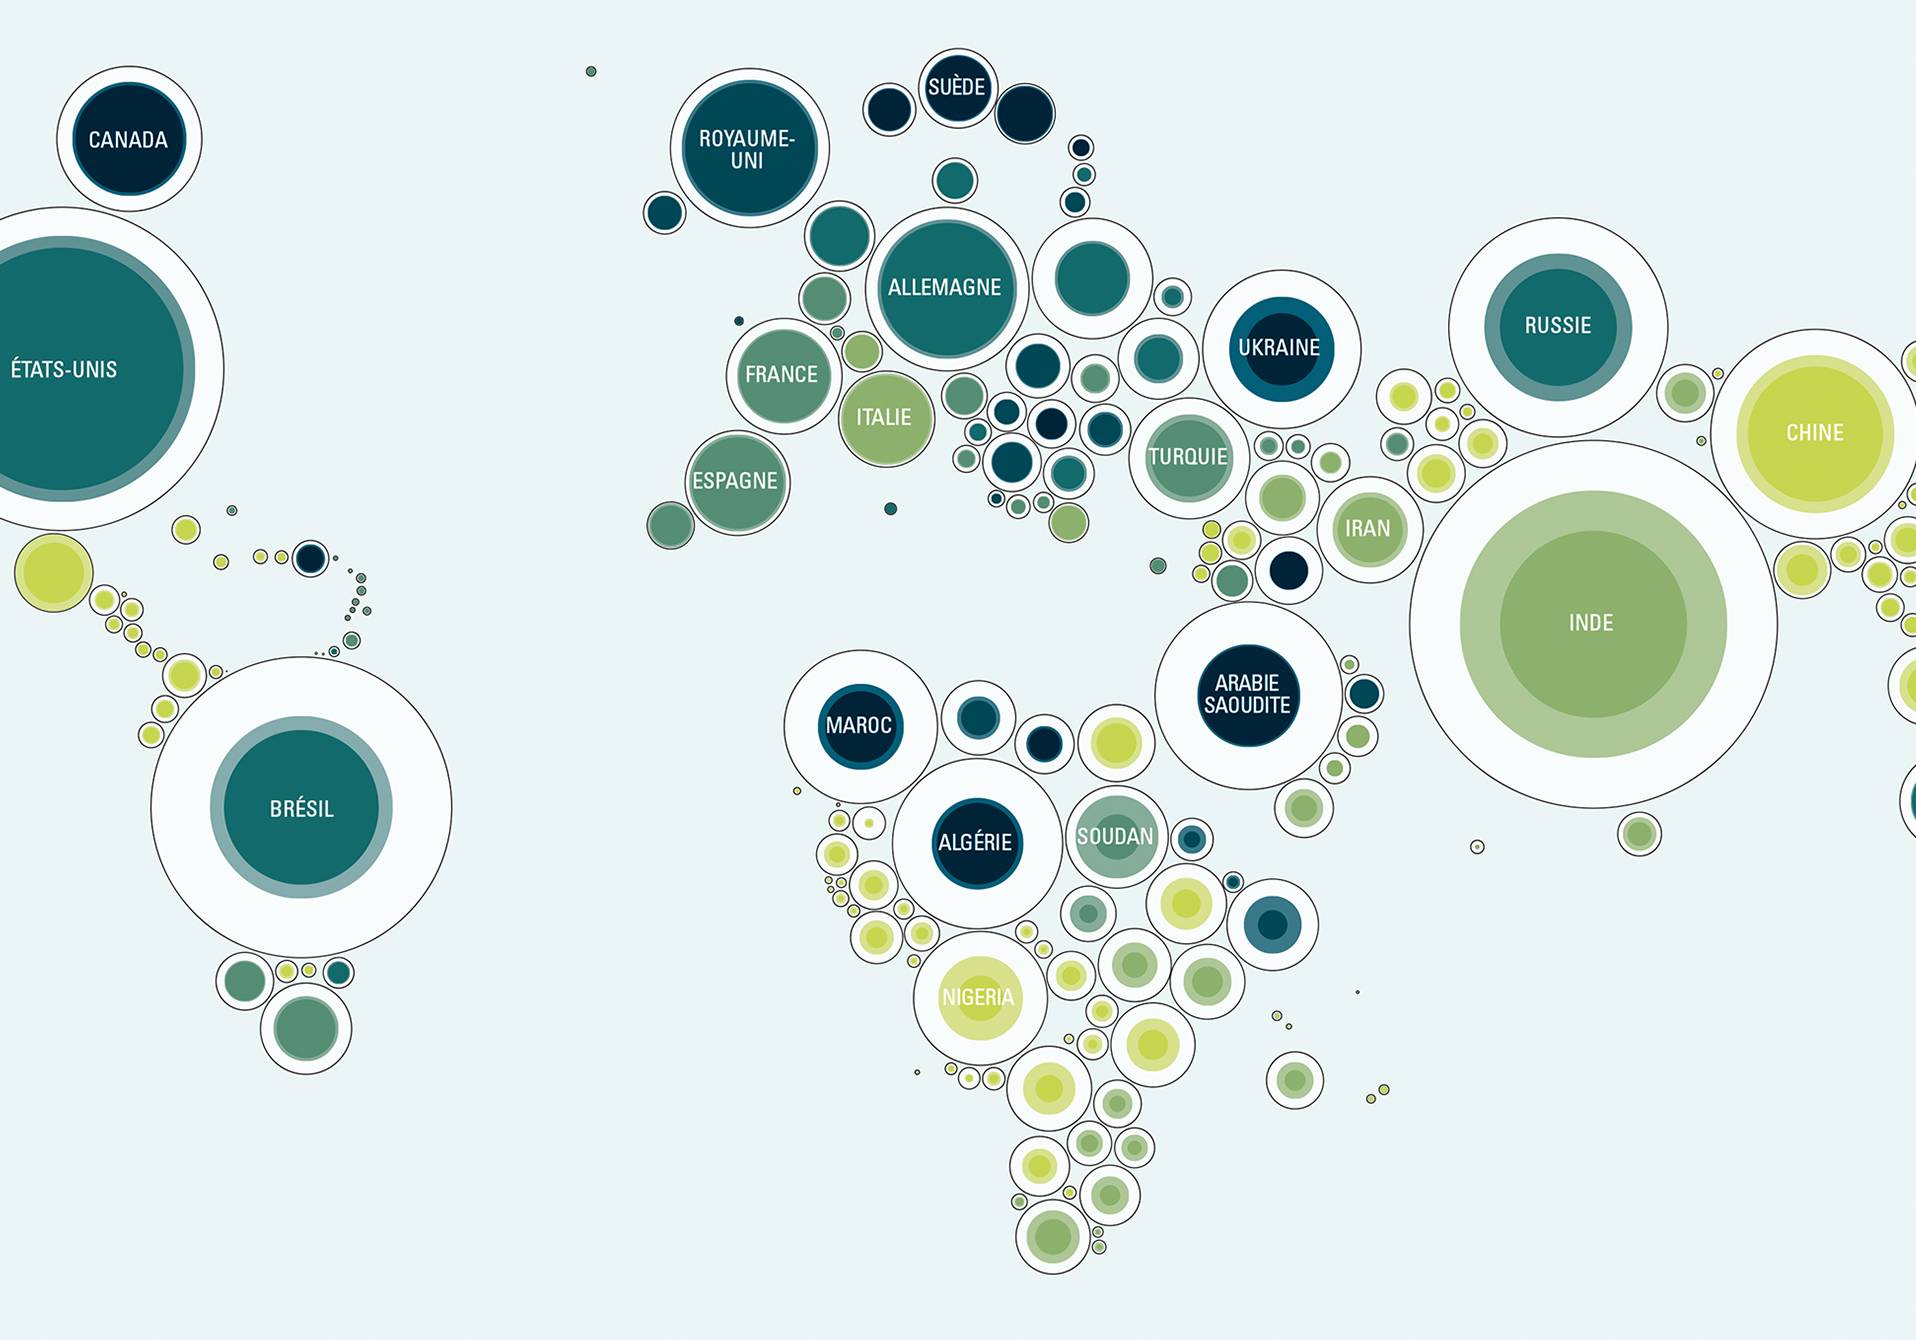 atlas montrant l'incidence et le nombre de cas de diabète de type 1 dans le monde